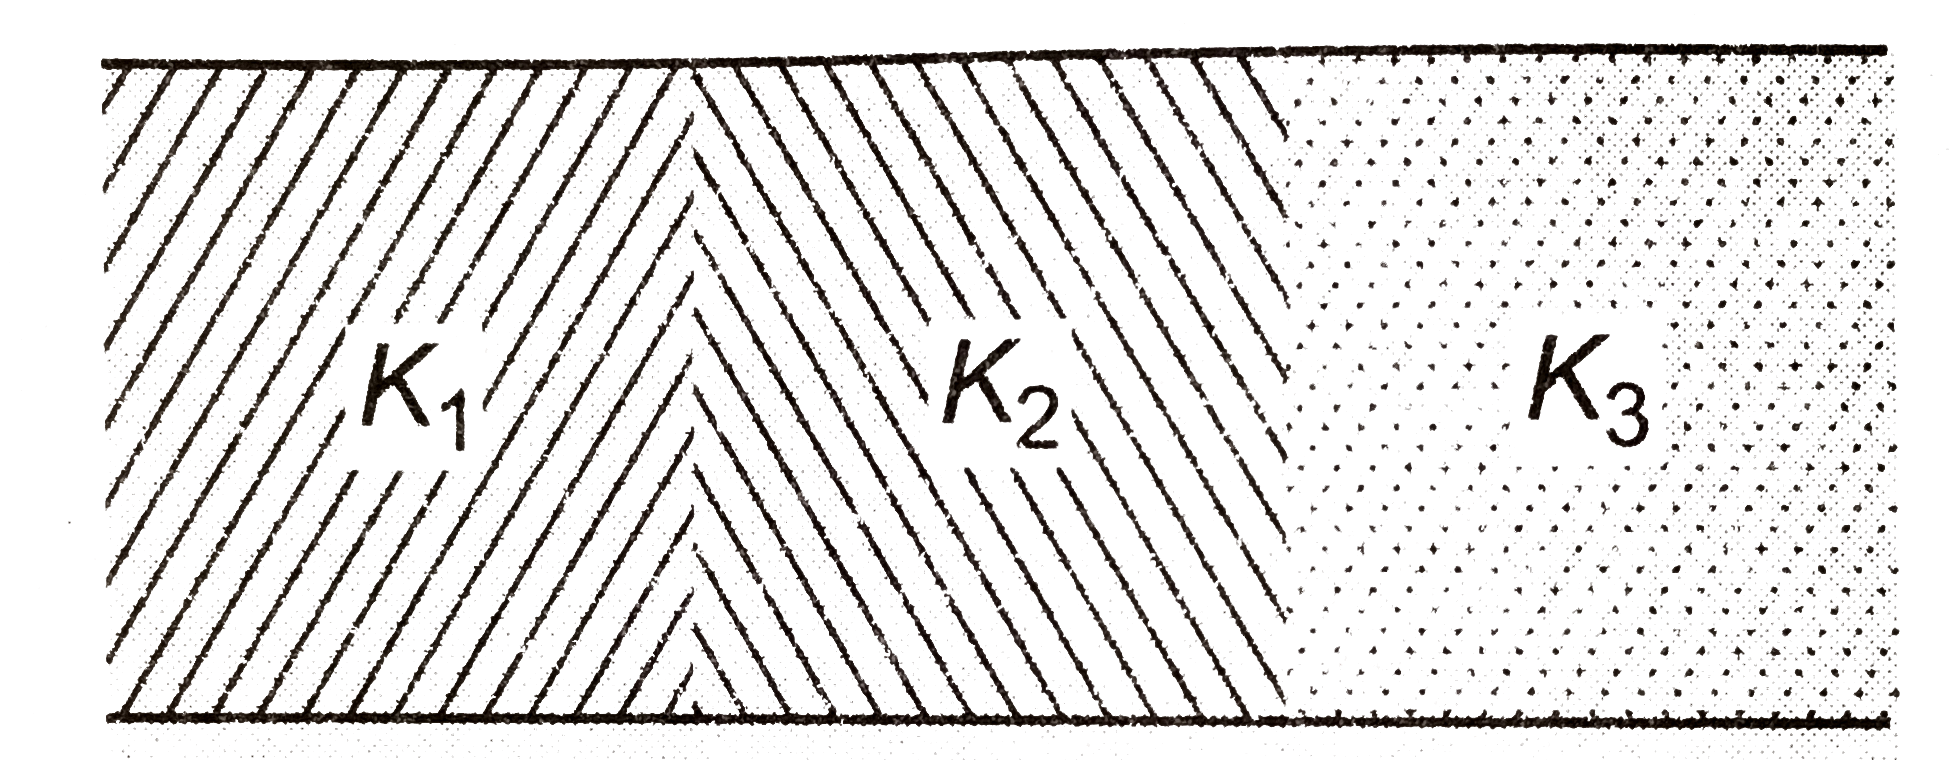 C धारिता के समान्तर प्लेट संधारित्र की  प्लेटों के बीच का स्थान तीन समरूप परावैघुत स्लैब से भर दिया जाता है (चित्र)। यदि इनके परावैघुतांक K(1),K(2) व K(3) हो तो नयी धारिता ज्ञात कीजिये।